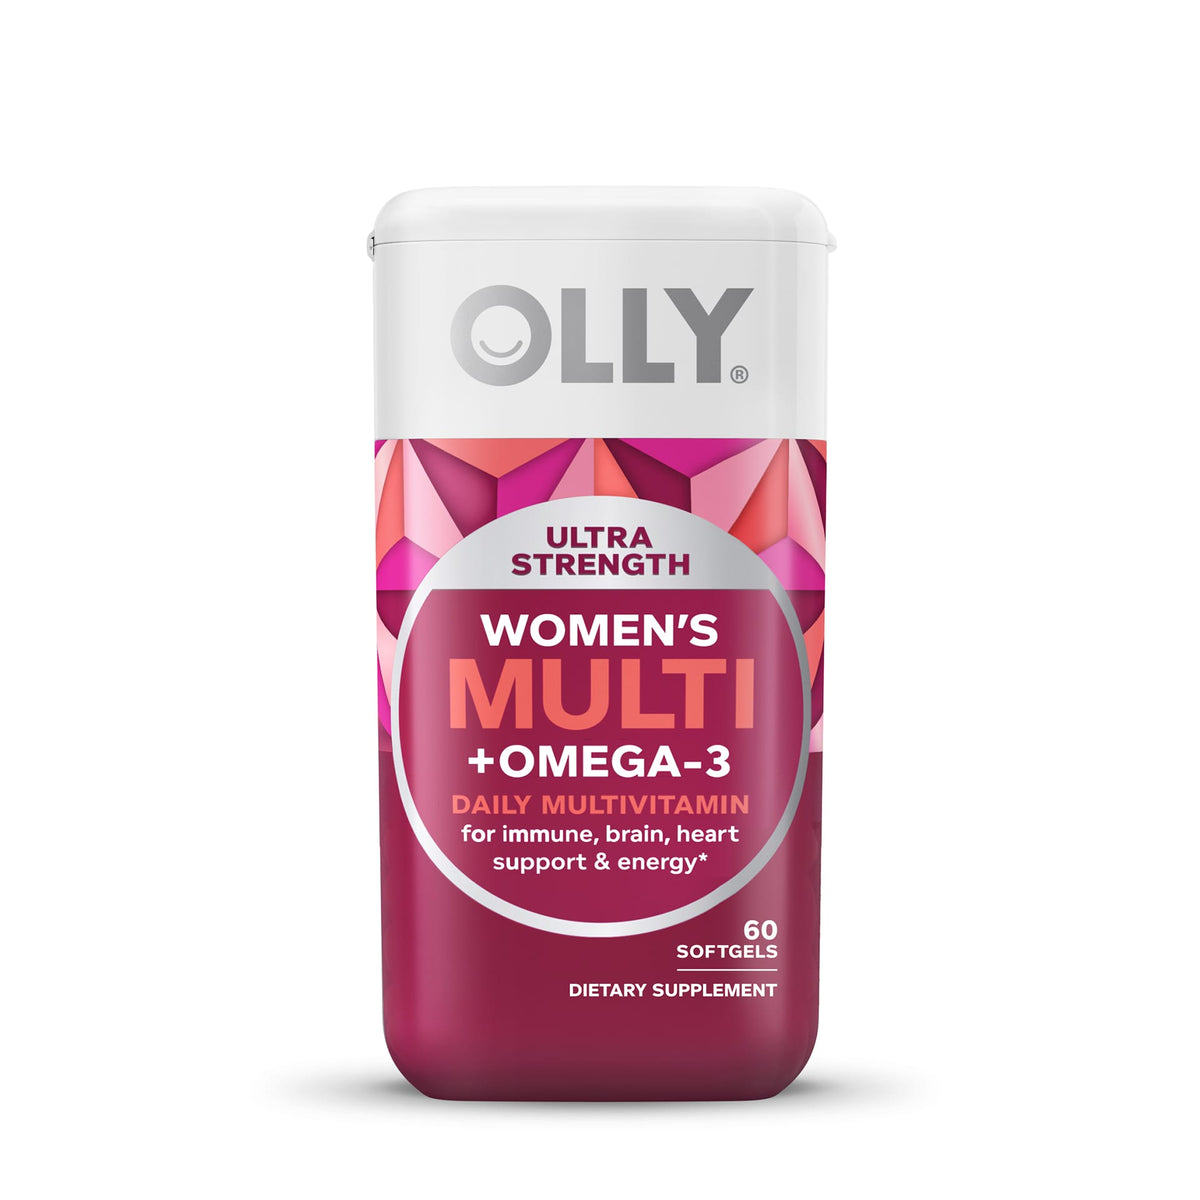 Ultra Strength Women's Multi & Omega-3 Softgels Image